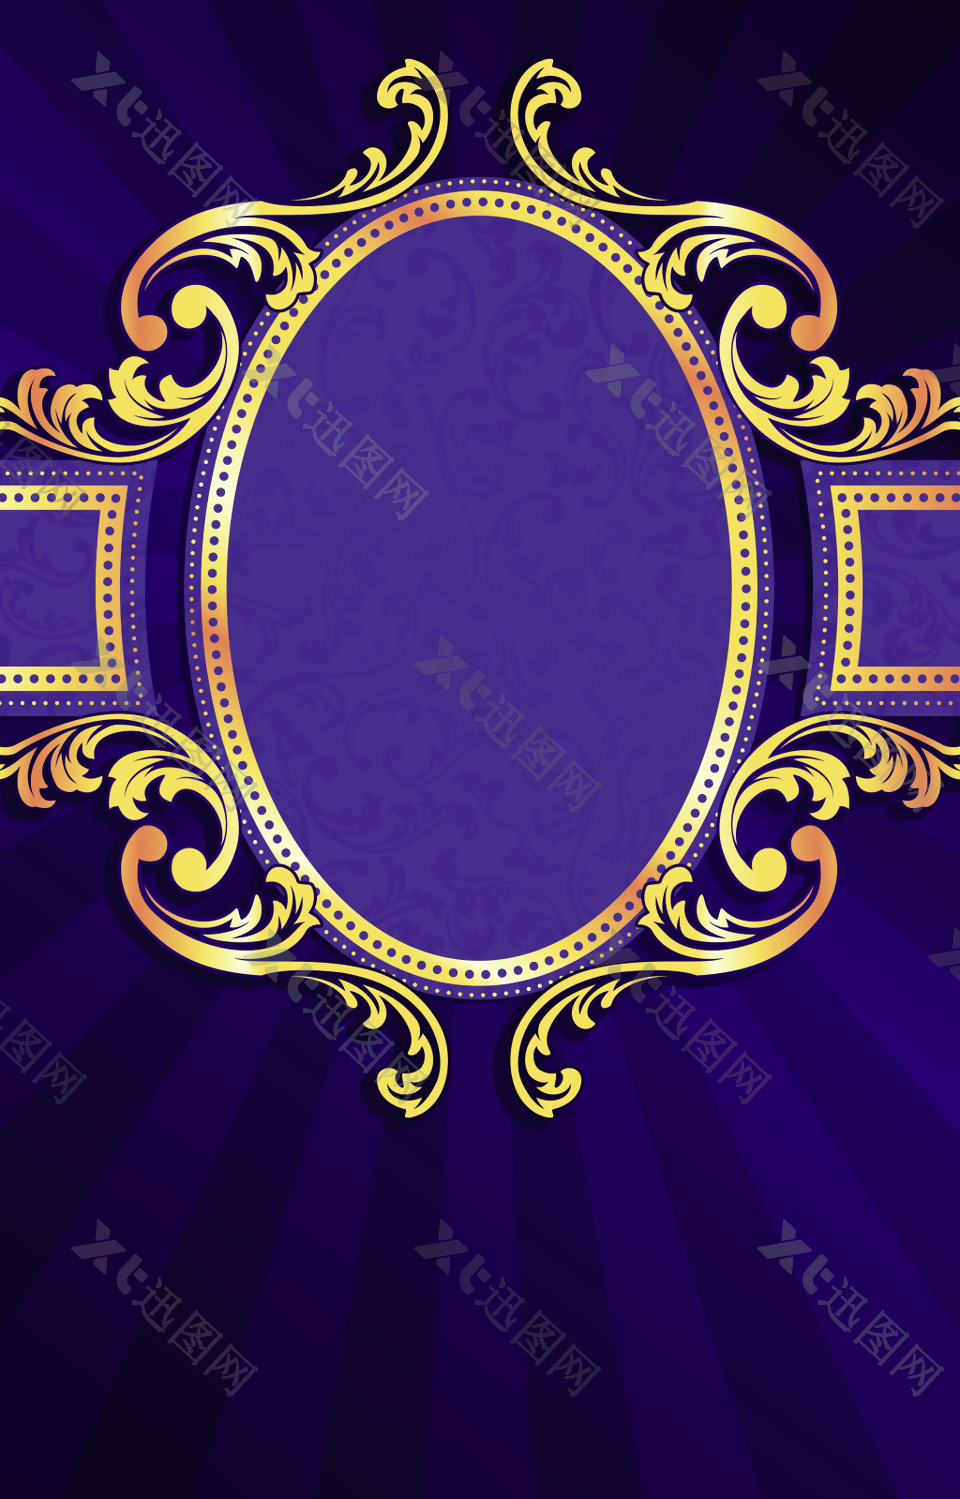 紫色大气花边圆形背景素材